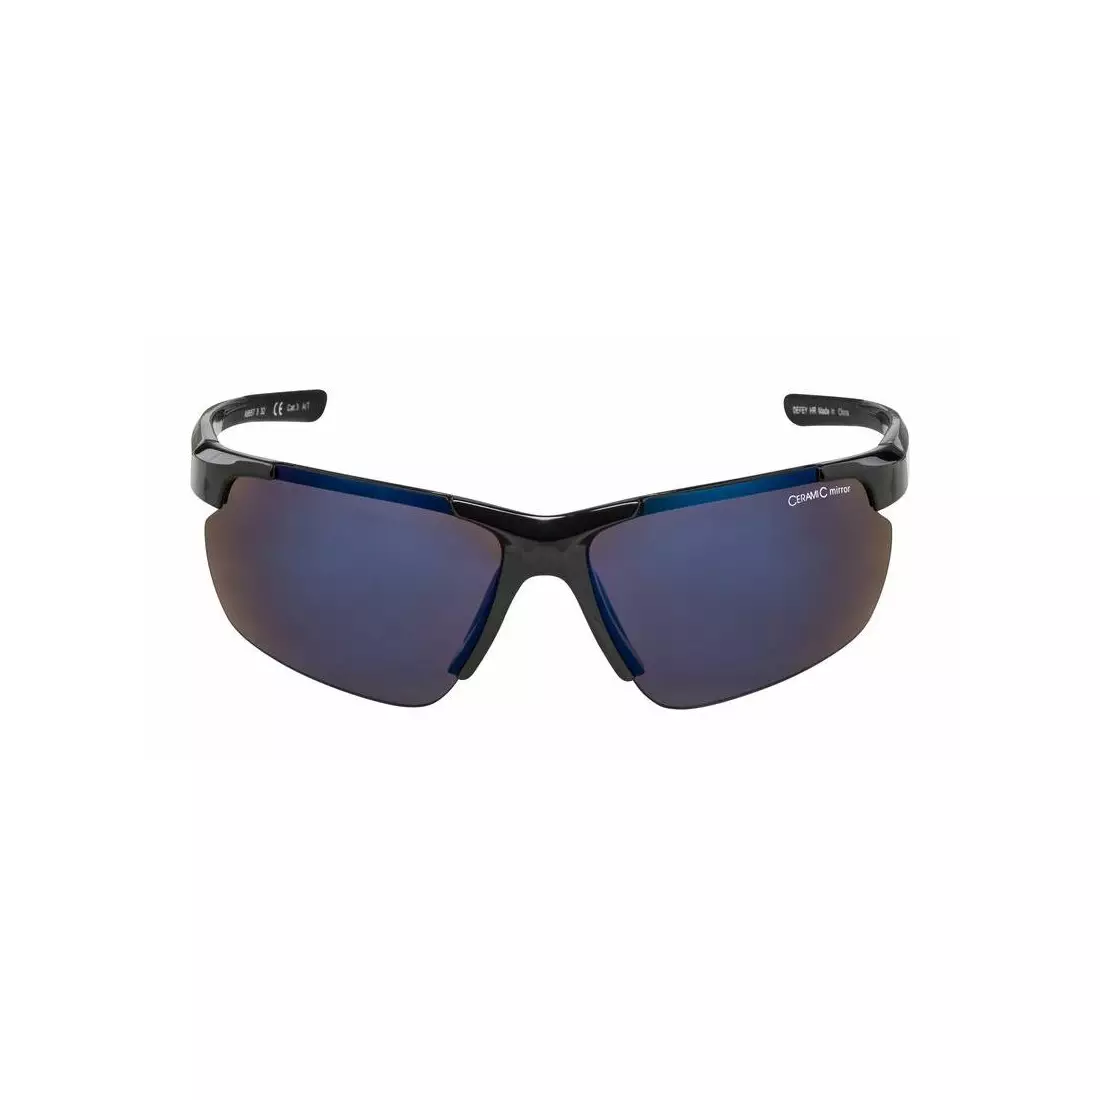 ALPINA Sportbrille DEFFY HR BLUE MIRROR S3 black A8657332